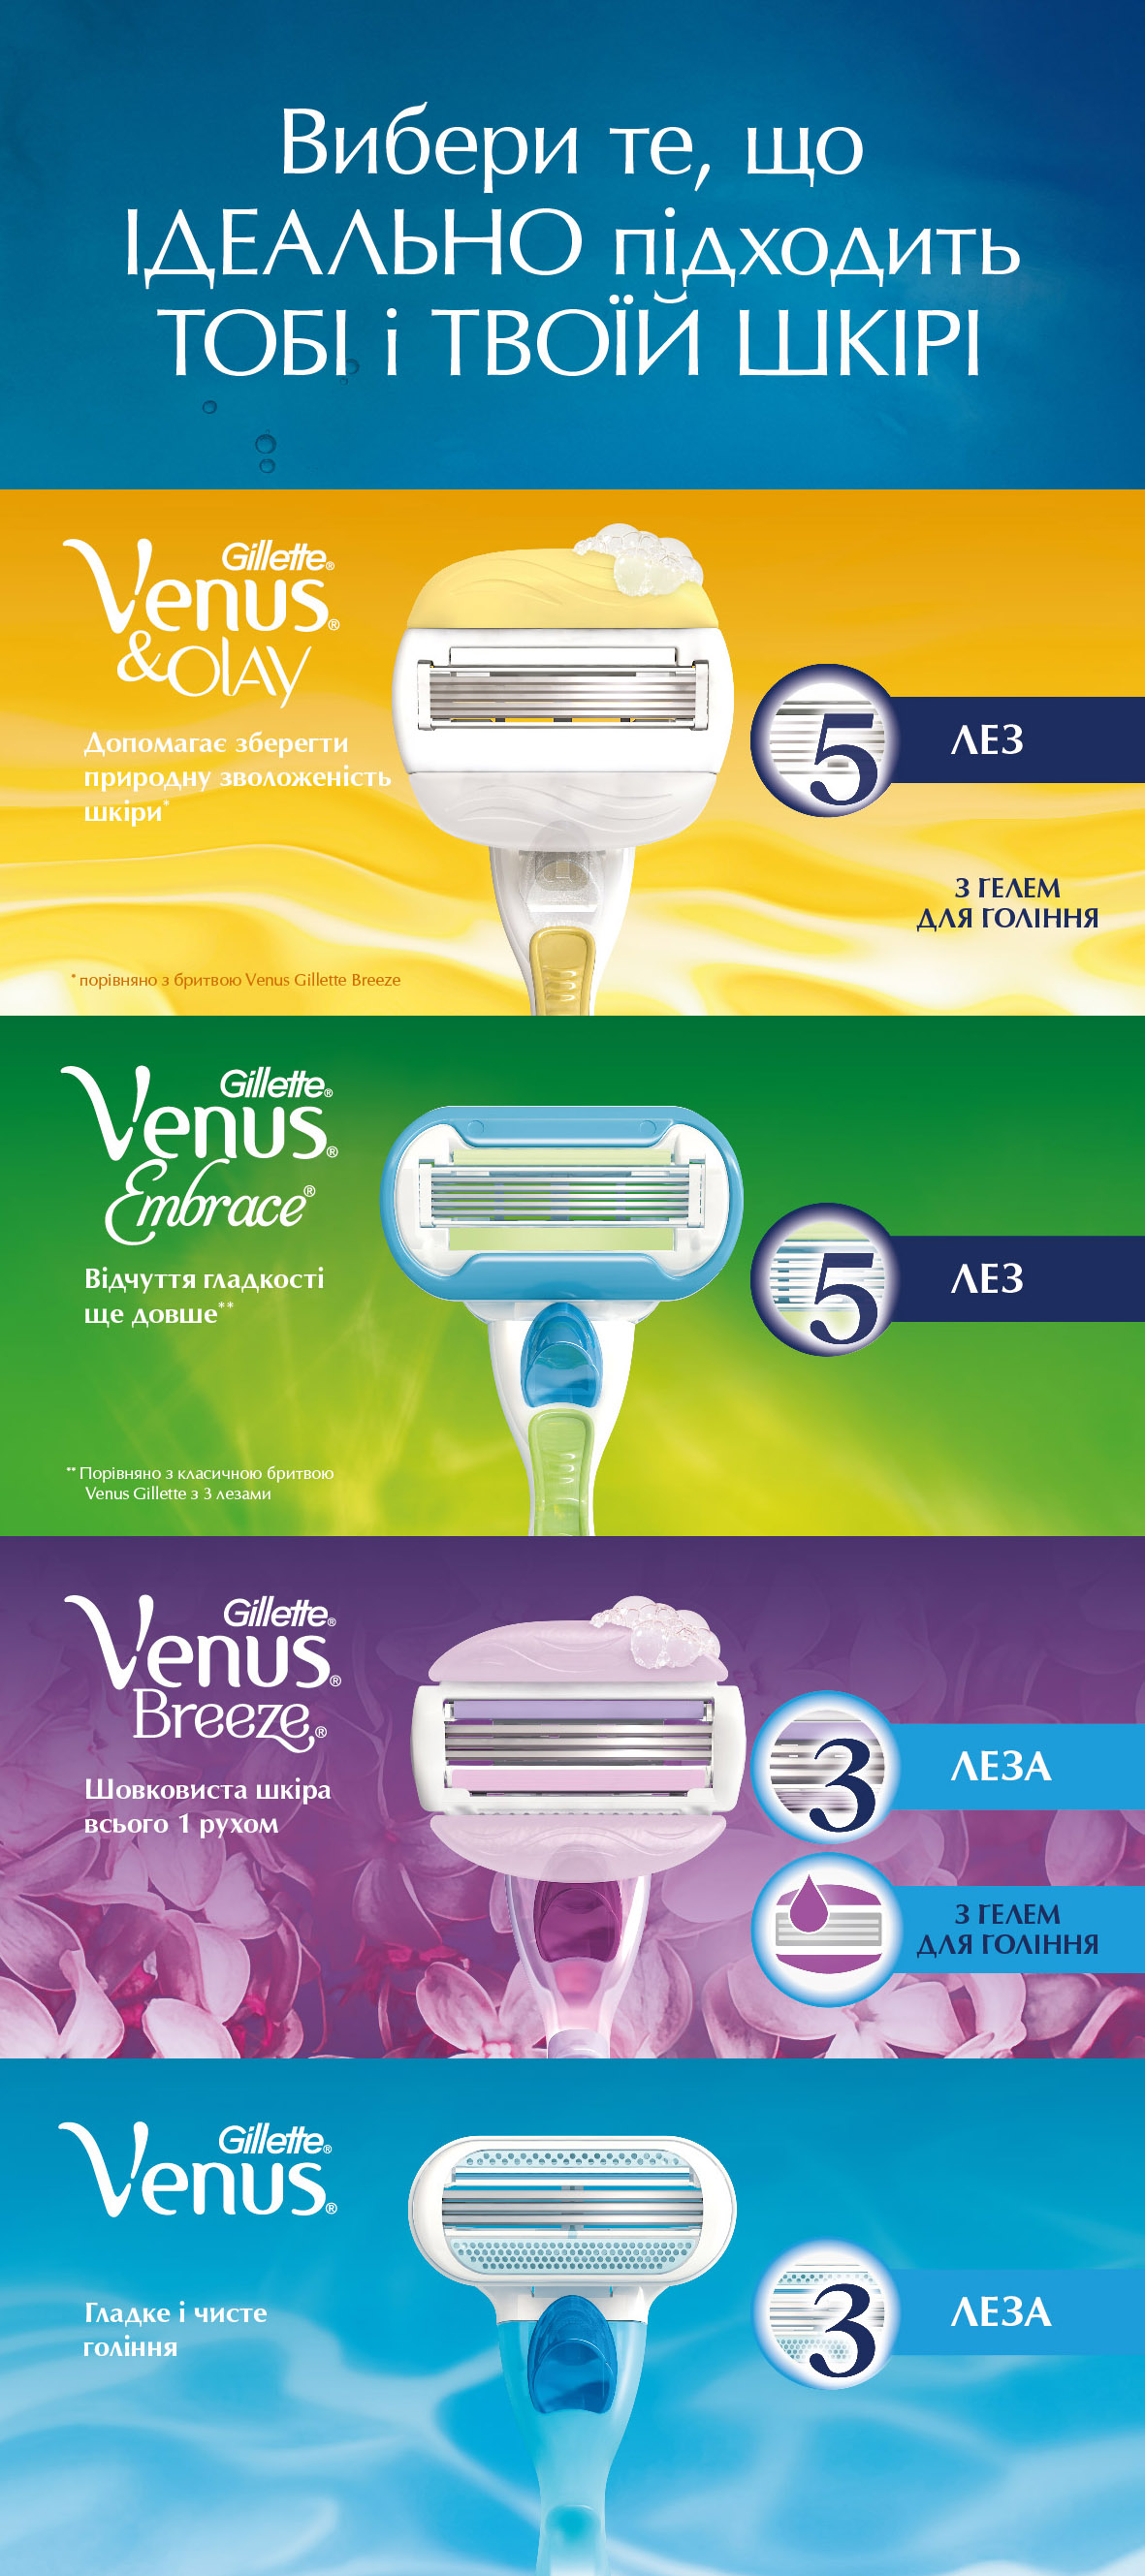 Станок для гоління Venus, c 2 змінними картриджами - фото 9